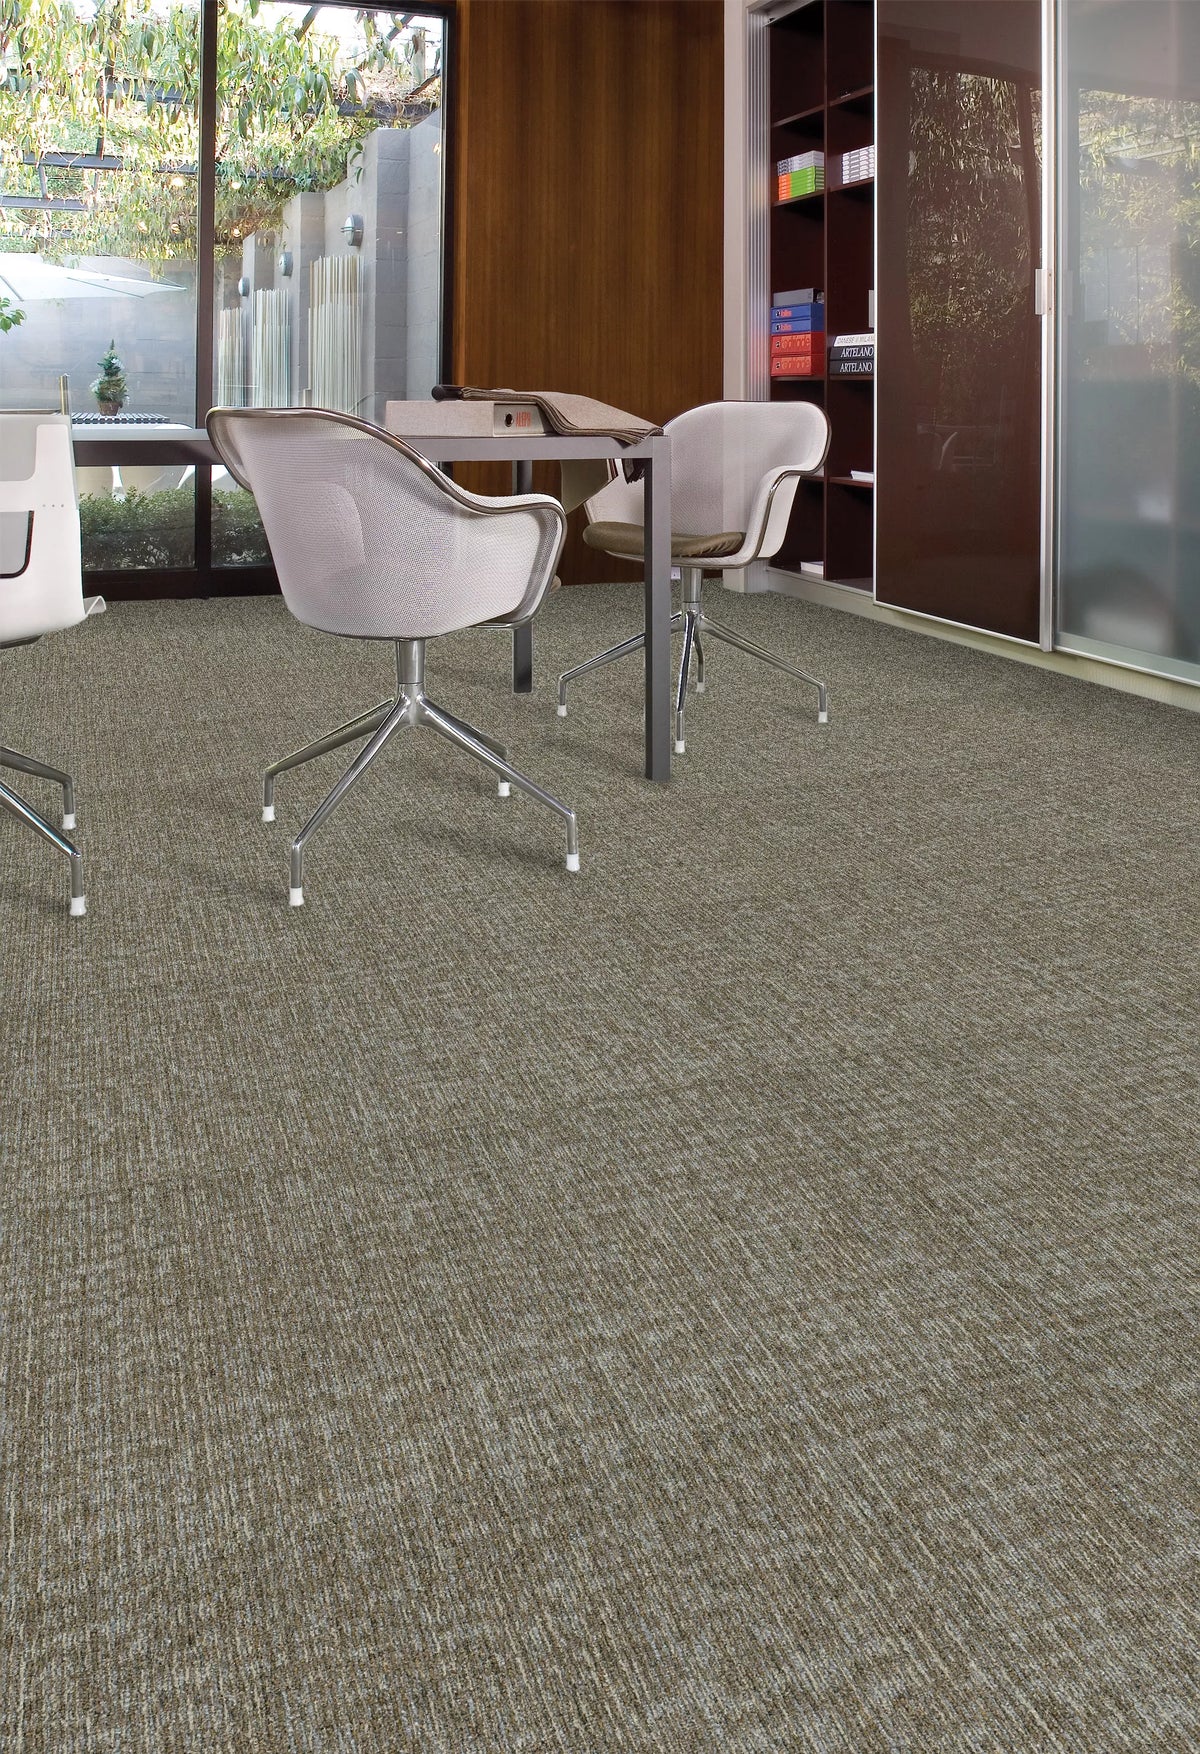 Aladdin Commercial - Find A Way - Restful Trek - Commercial Carpet Tile - Birch Installed